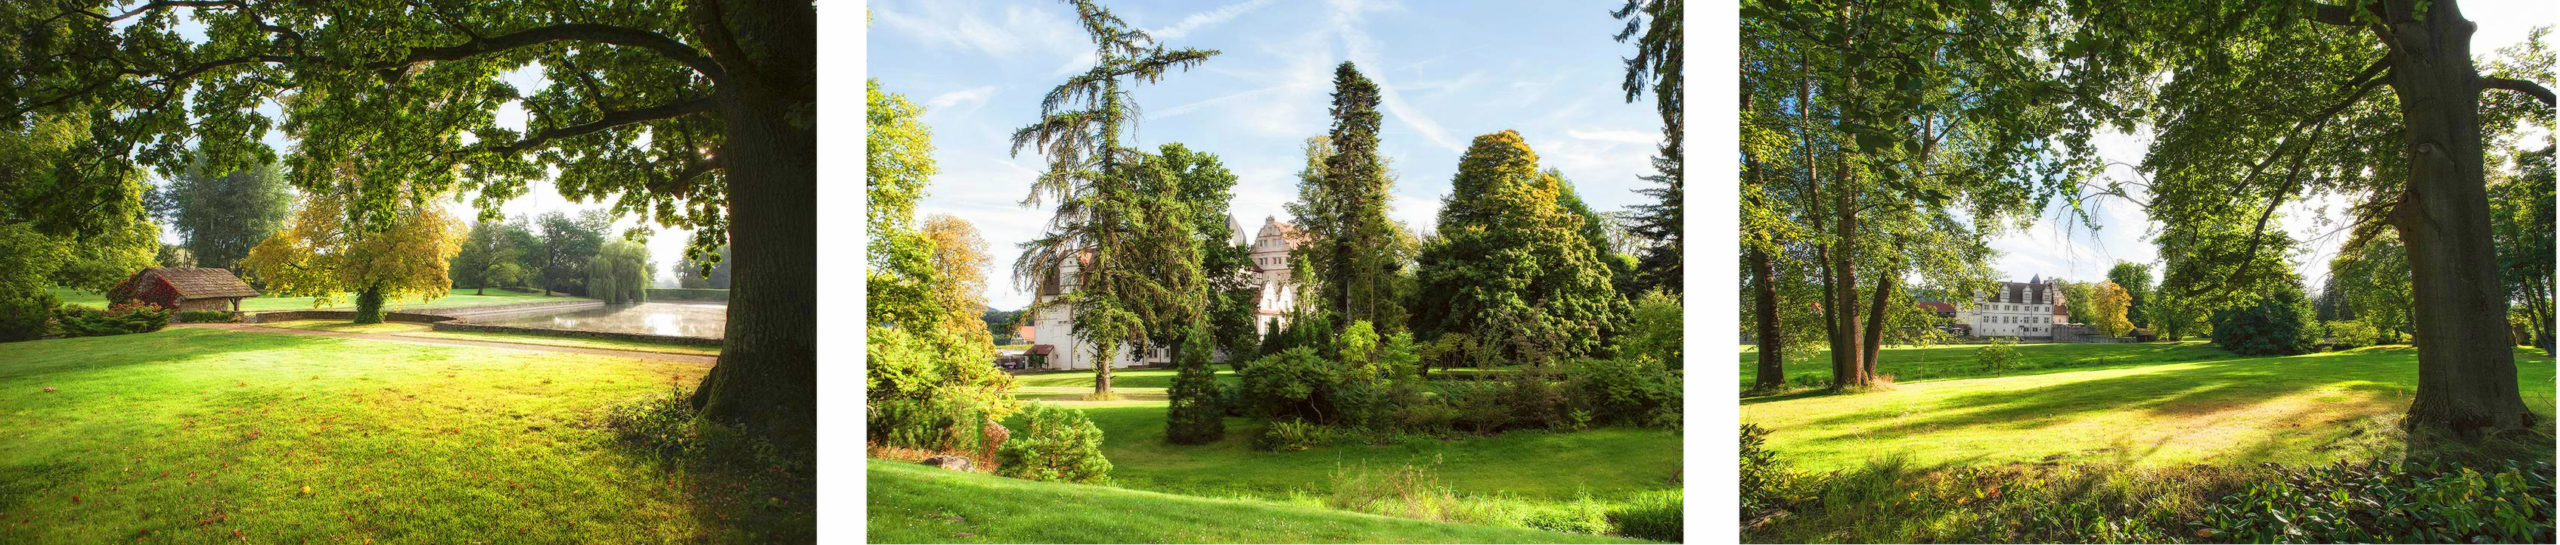 grüner Schlosspark Schwöbber bei Sommer mit Schlosshotel im Hintergrund